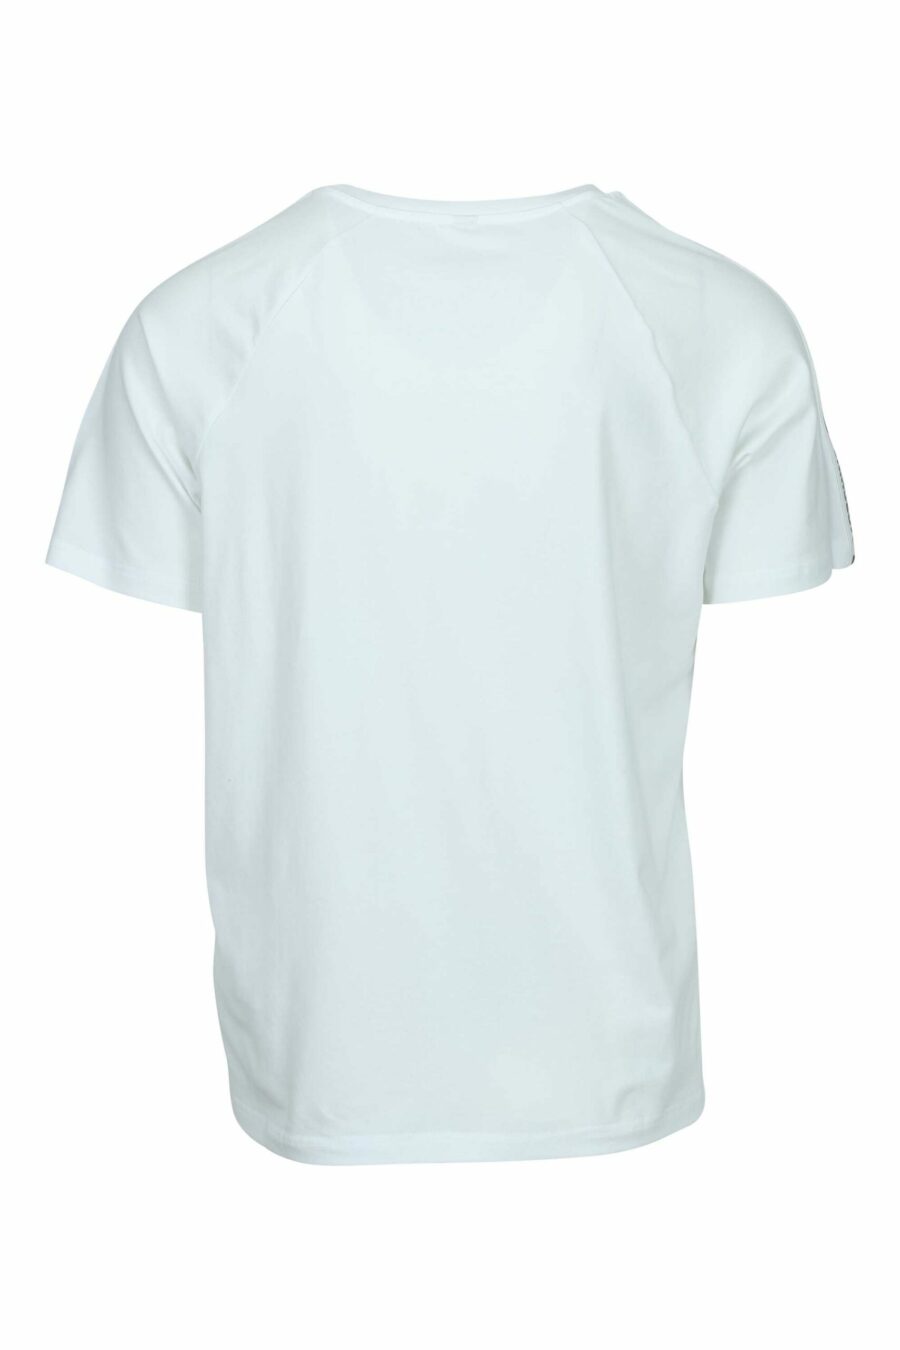 T-shirt blanc avec logo d'ours "underbear" sur la bande d'épaule - 667113602462 1 à l'échelle